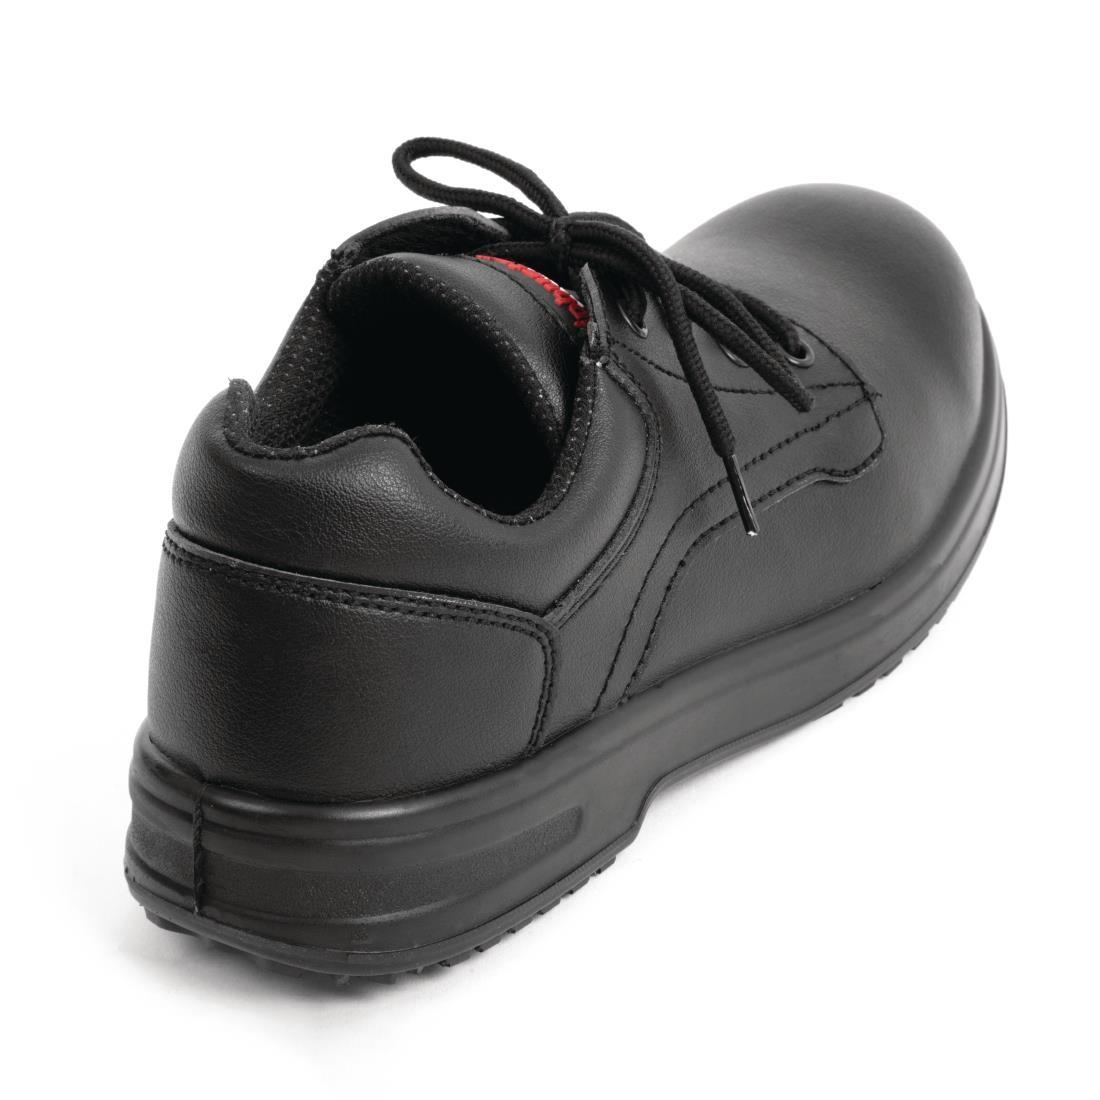 Slipbuster Basic Shoes Slip Resistant Black 44 - BB498-44  - 3